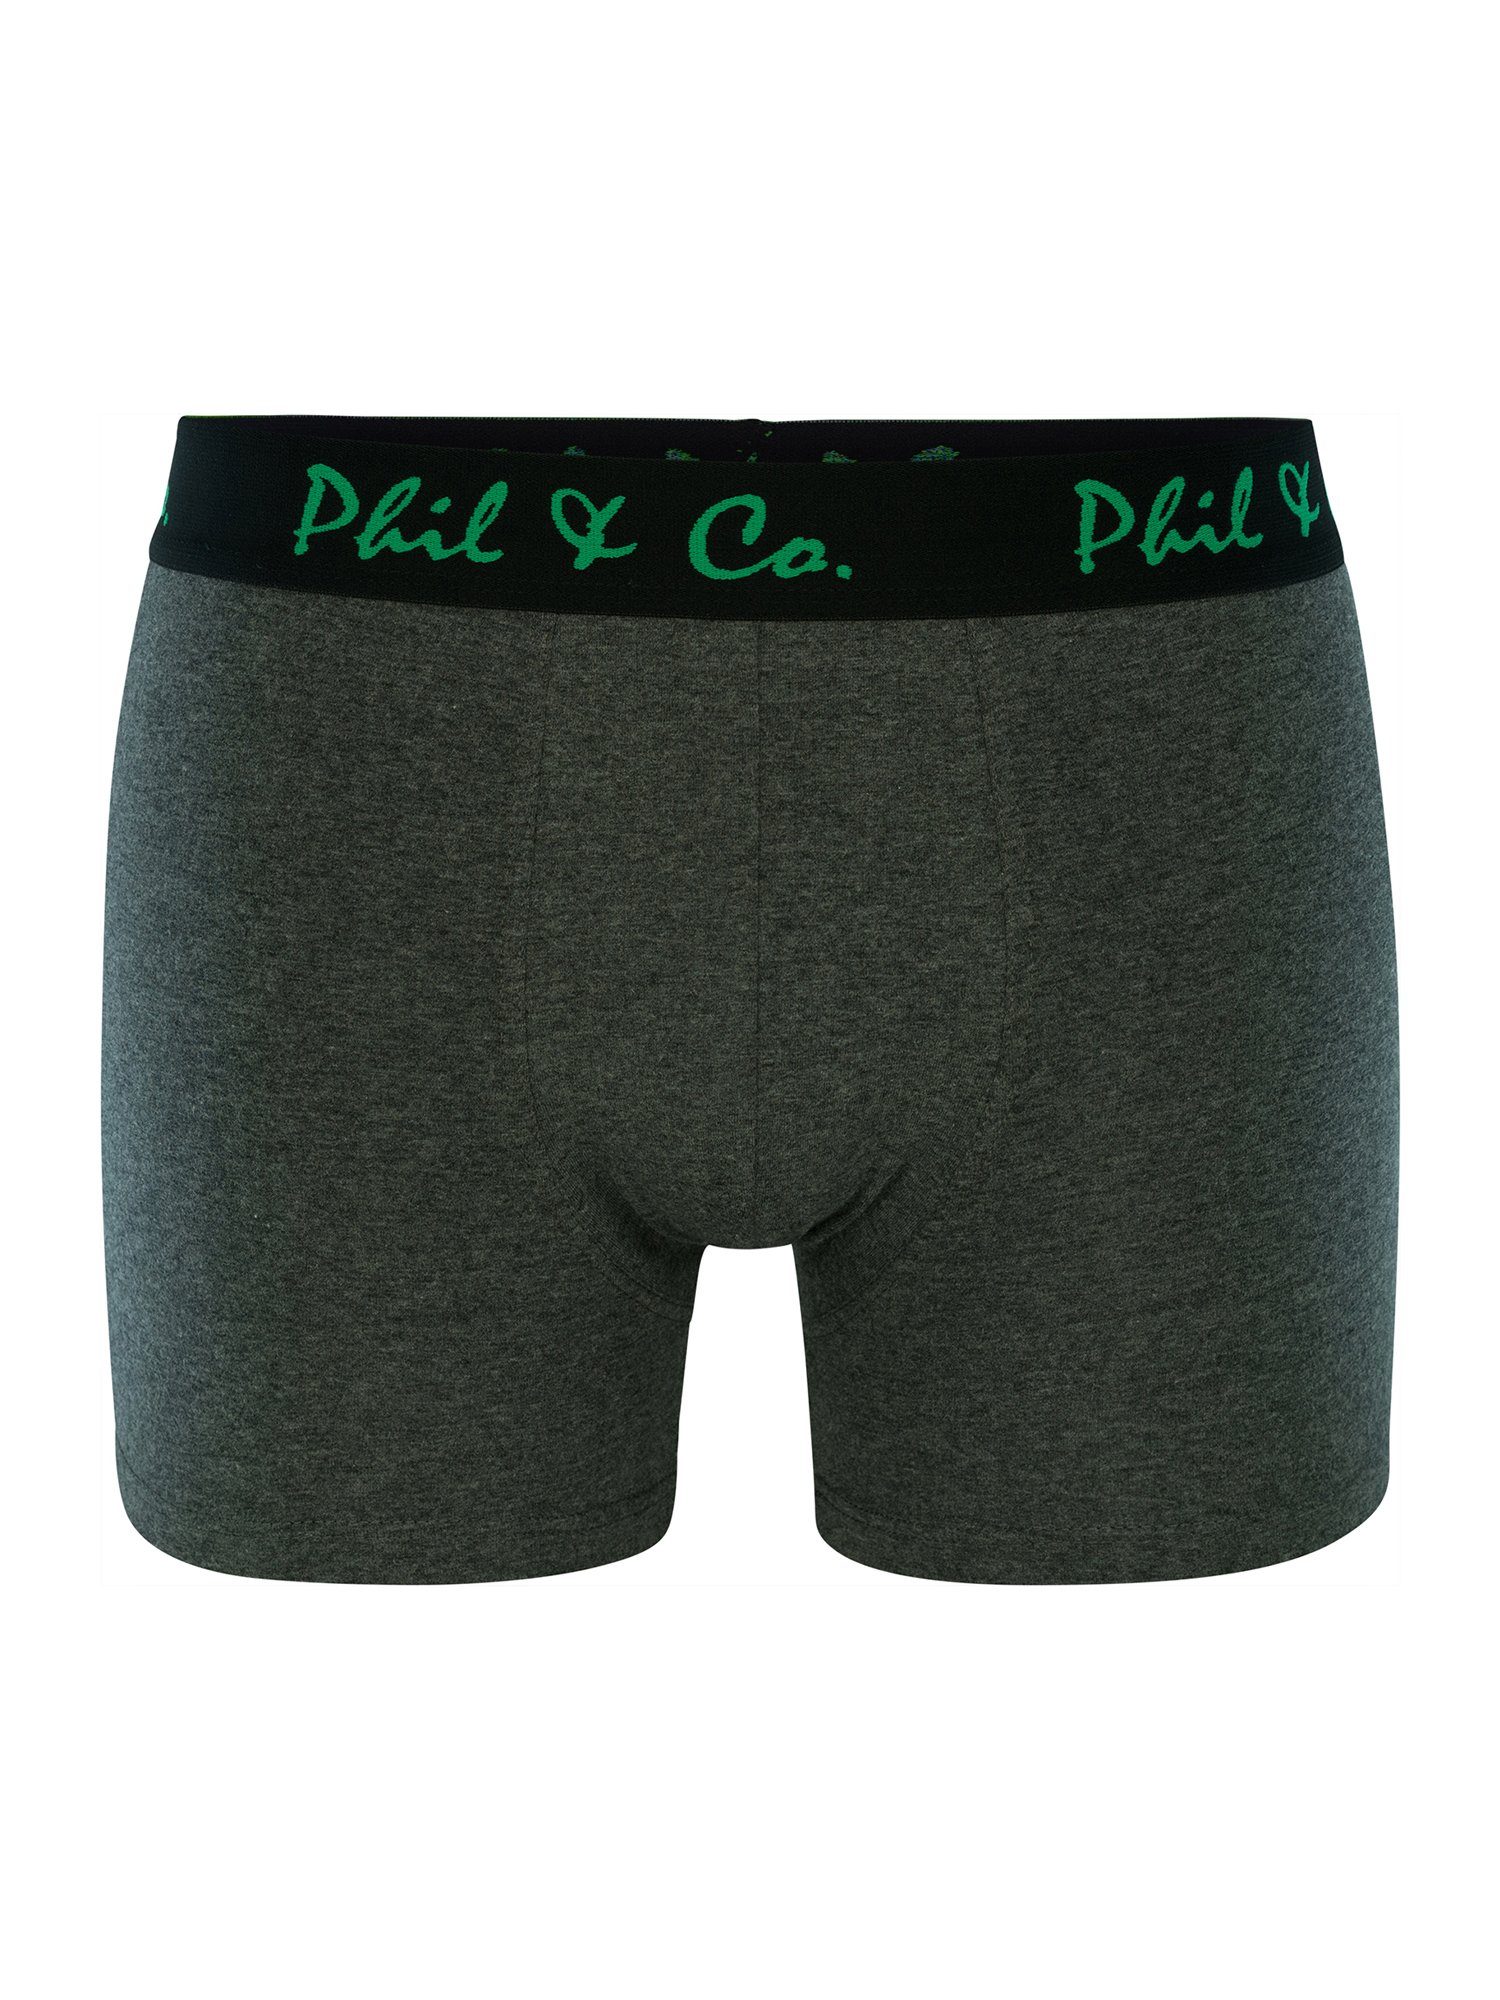 Phil & Co. Retro Pants Jersey (4-St) grün-anthrazit